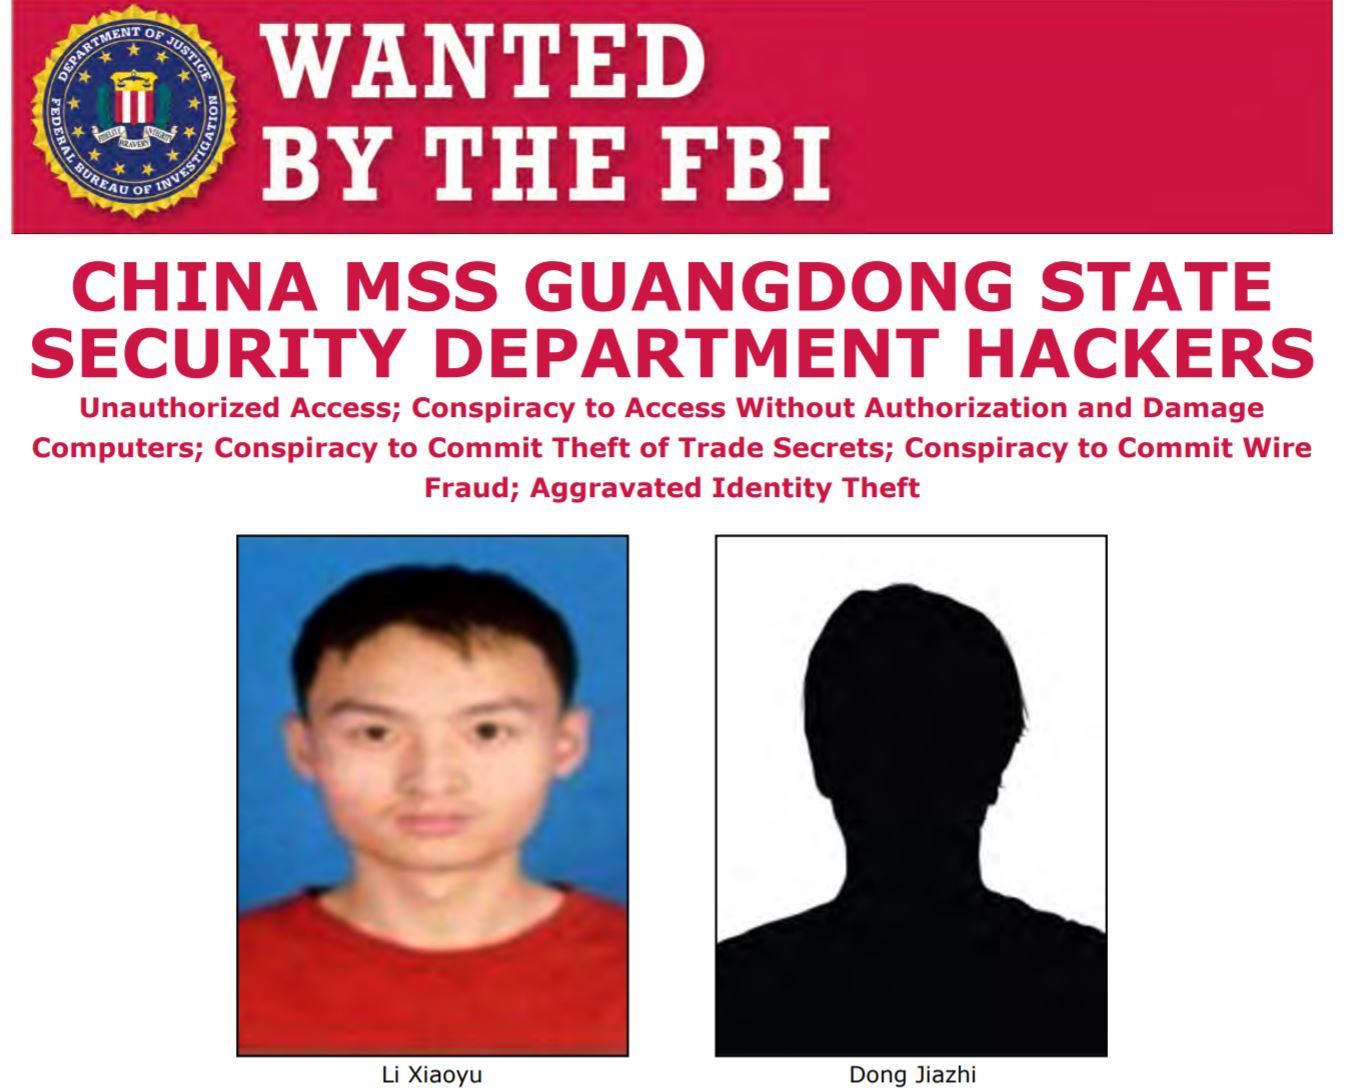 米司法省、中国人2人を新型コロナ関連情報窃盗目的のサイバー攻撃で起訴